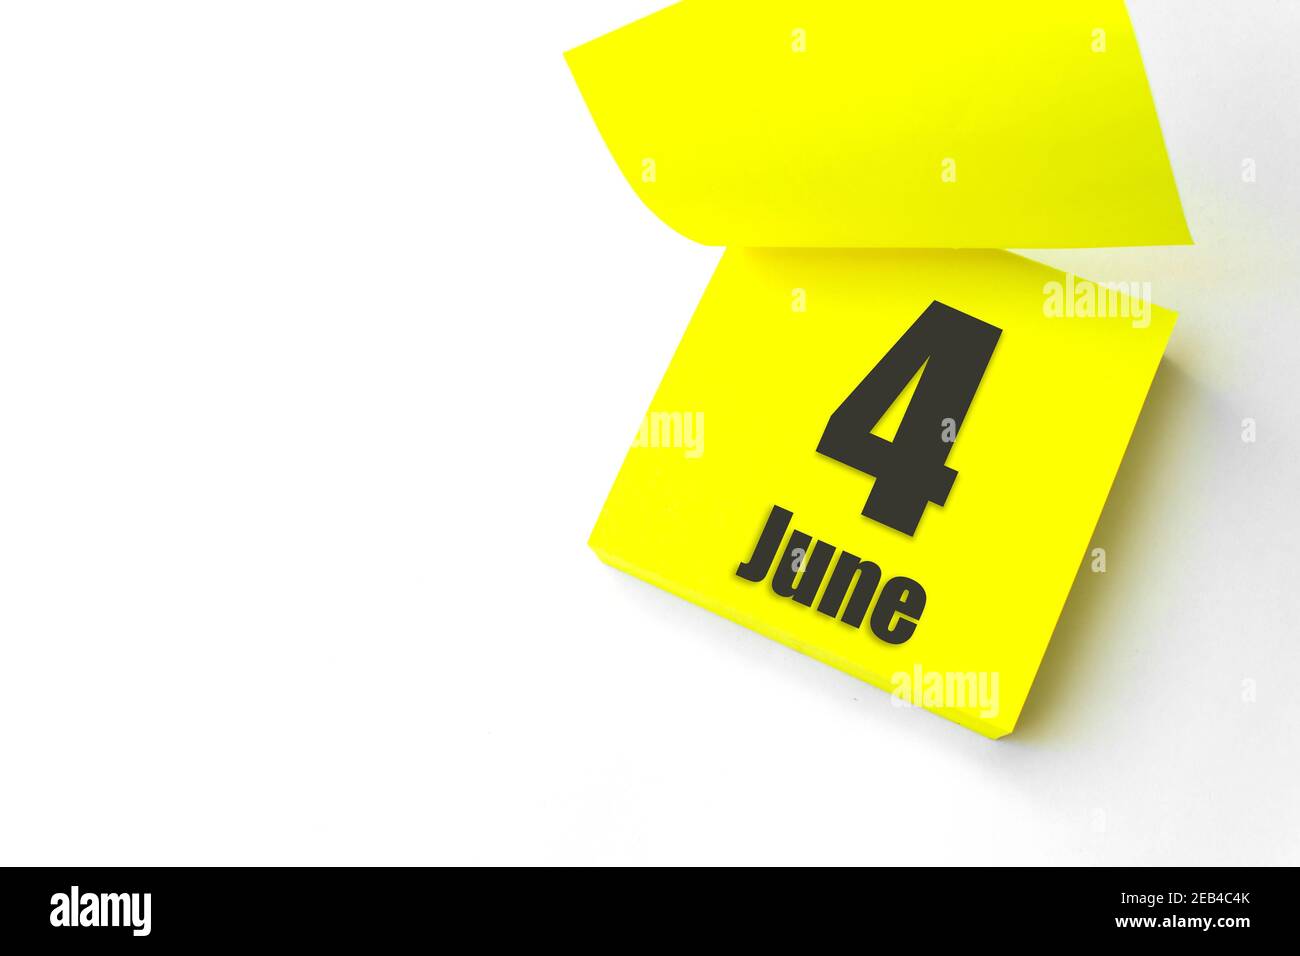 4 juin. Jour 4 du mois, date du calendrier. Gros plan papier vierge autocollant de rappel jaune sur fond blanc. Concept mois d'été, jour de l'année Banque D'Images